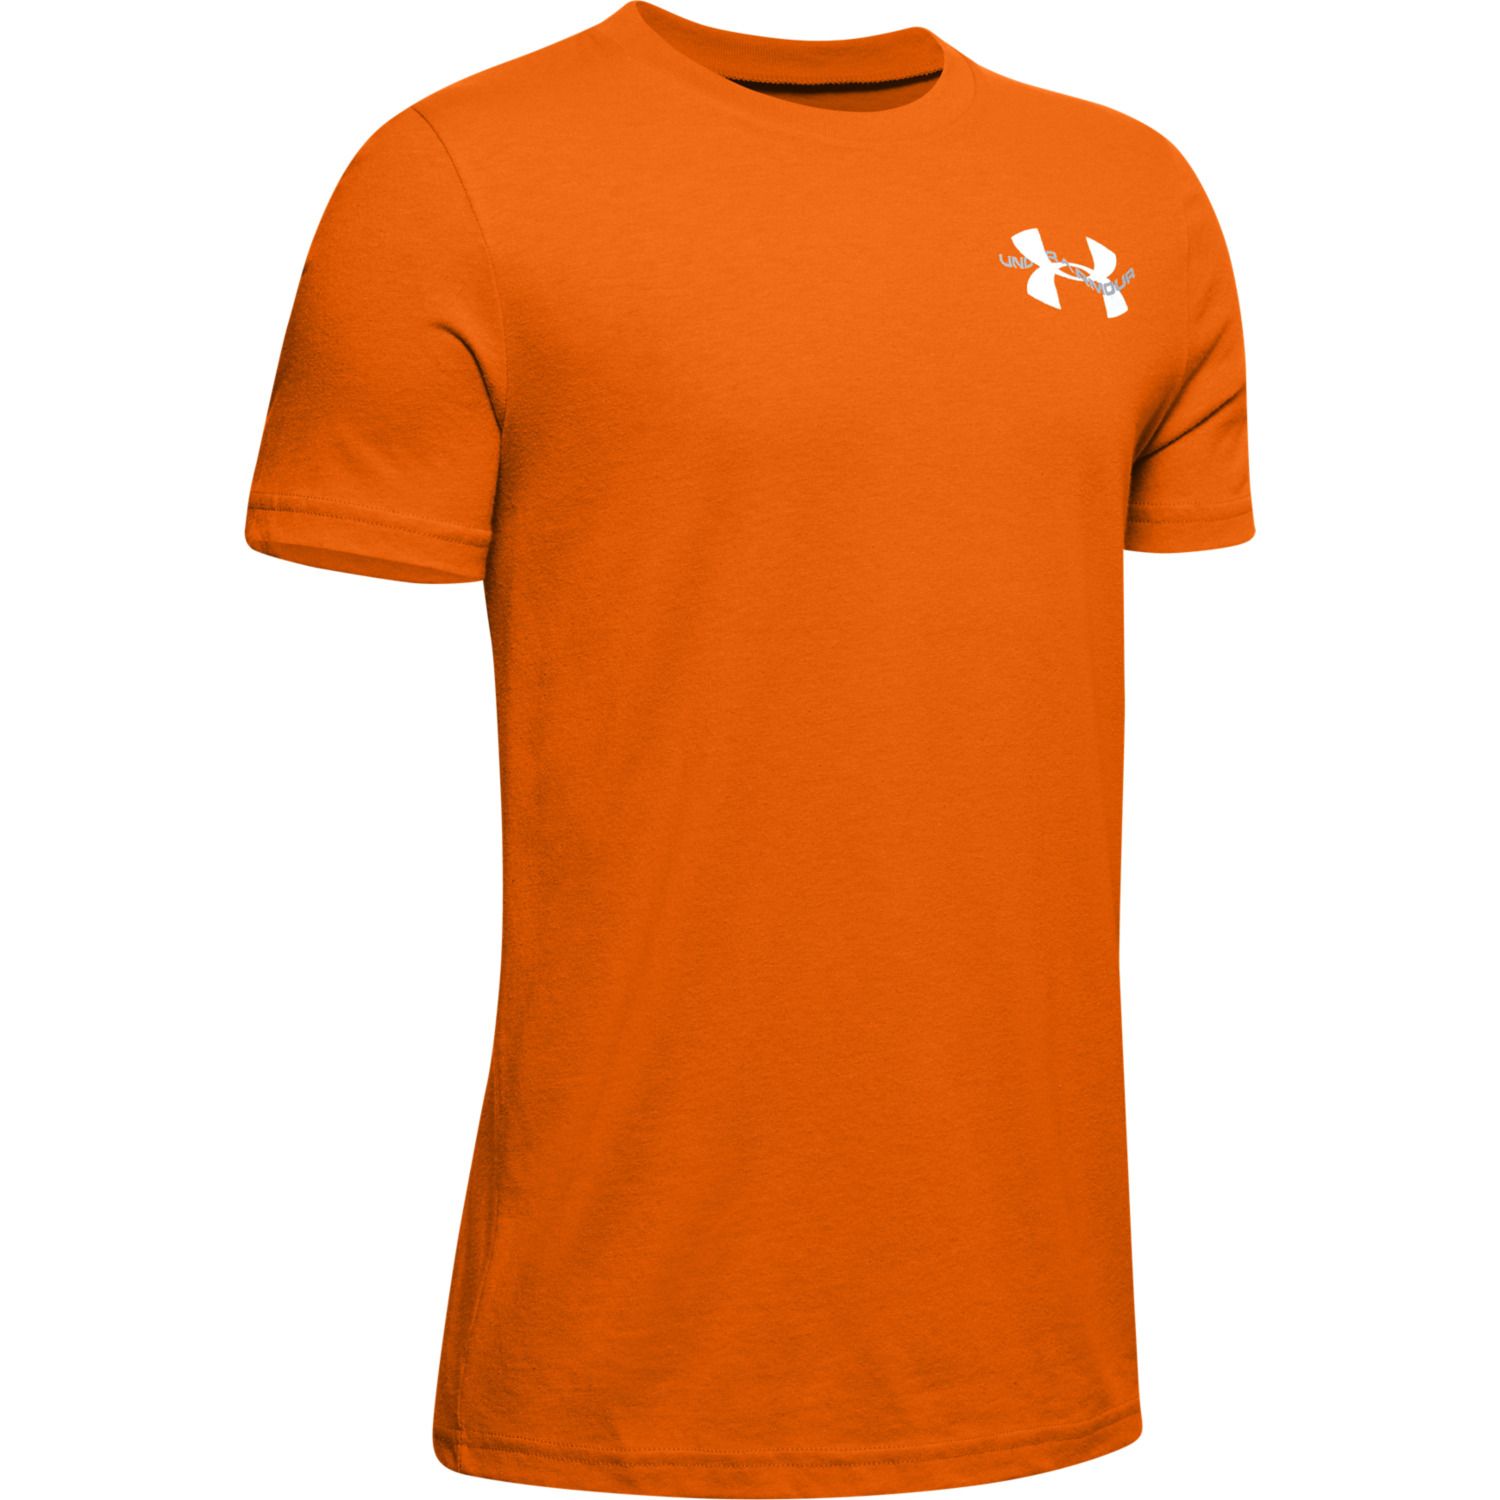 orange under armour t shirt